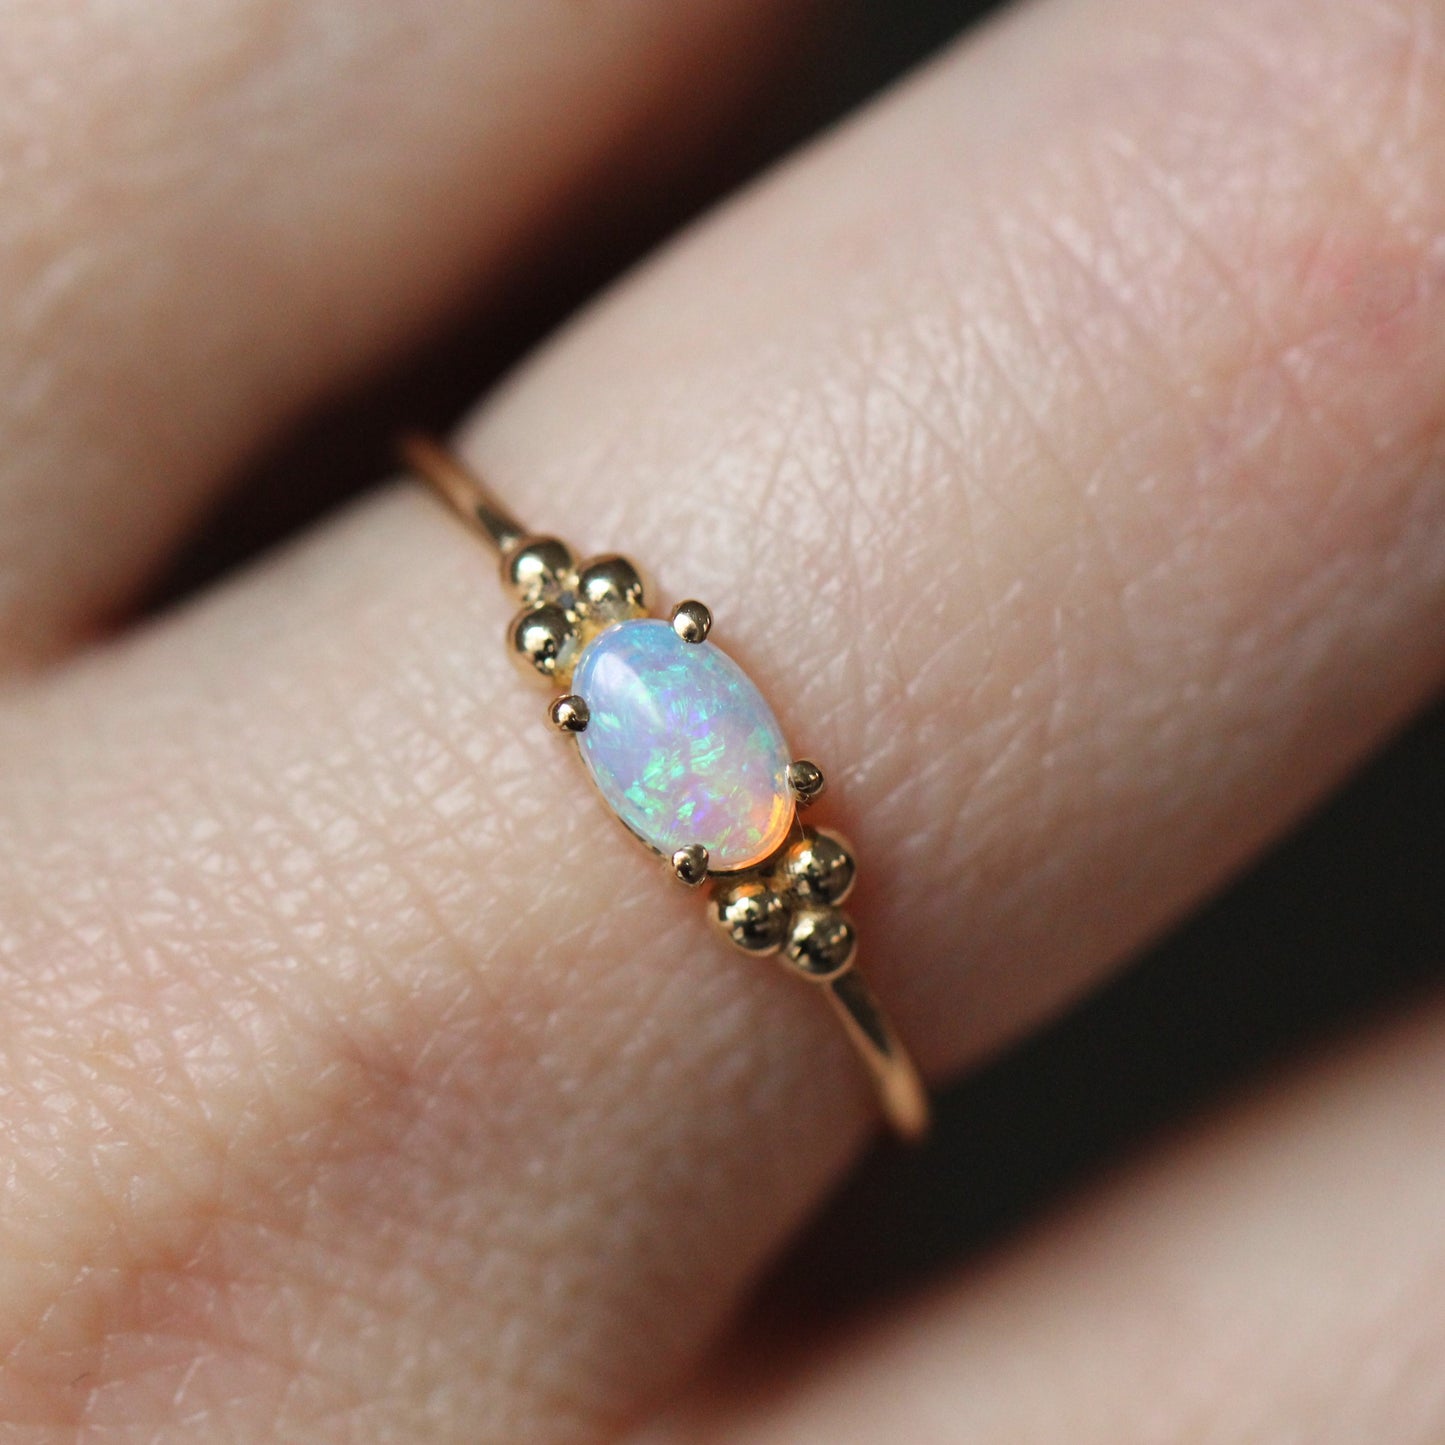 Triple Bead Australian Opal Ring